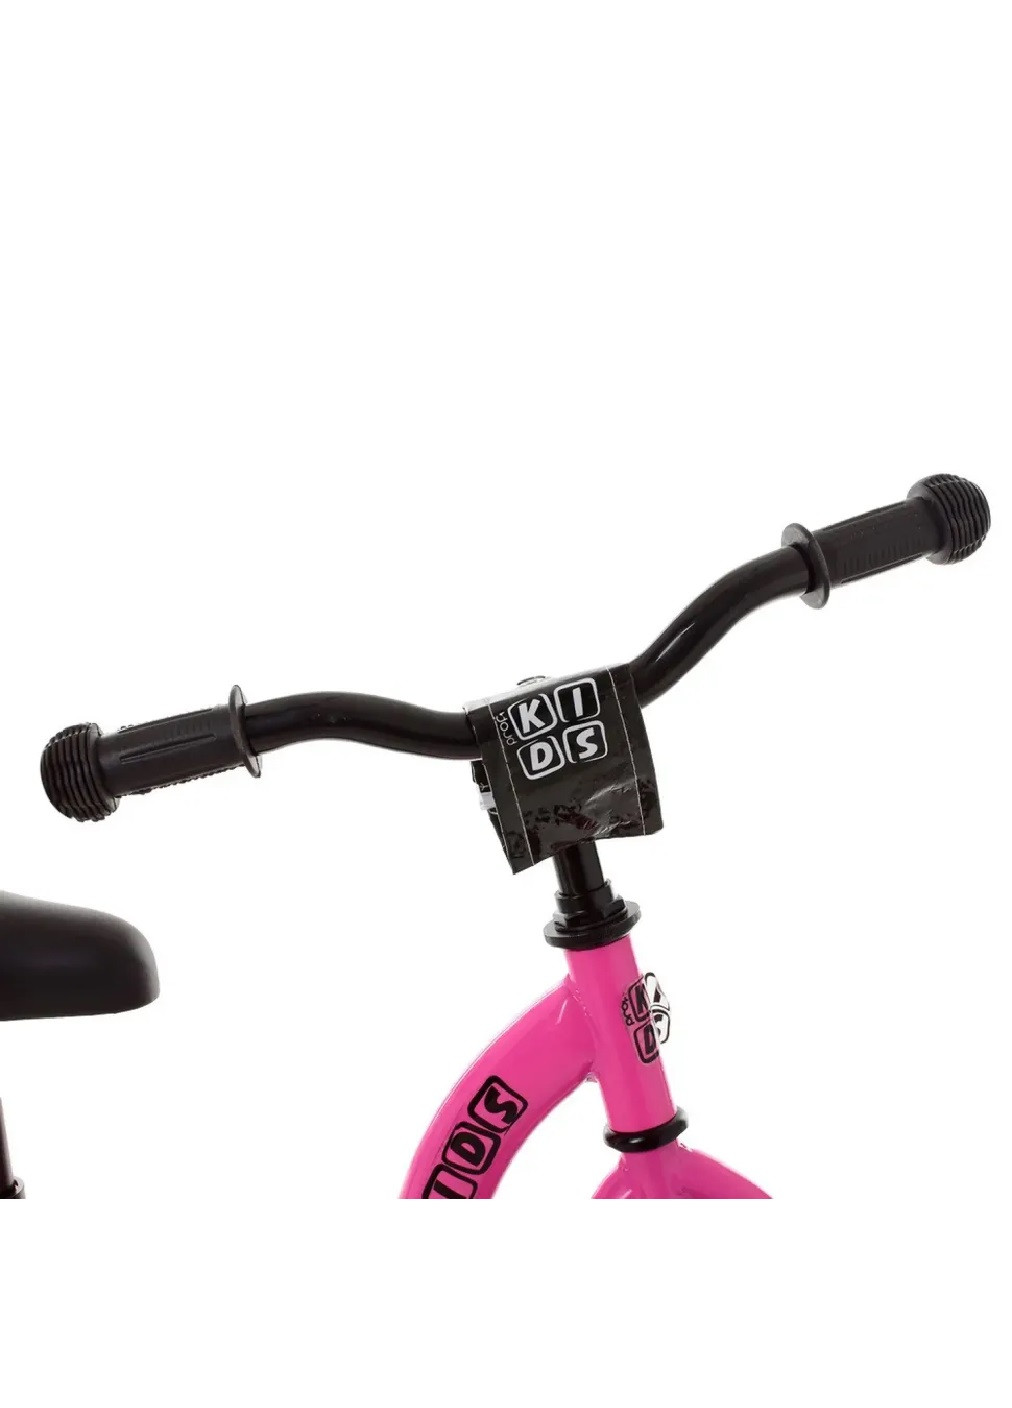 Біговел самокат безпедальний велосипед розвиваючий дитячий з підніжкою підставкою для ніг 88х43 см (474251-Prob) Рожевий Unbranded (257900652)